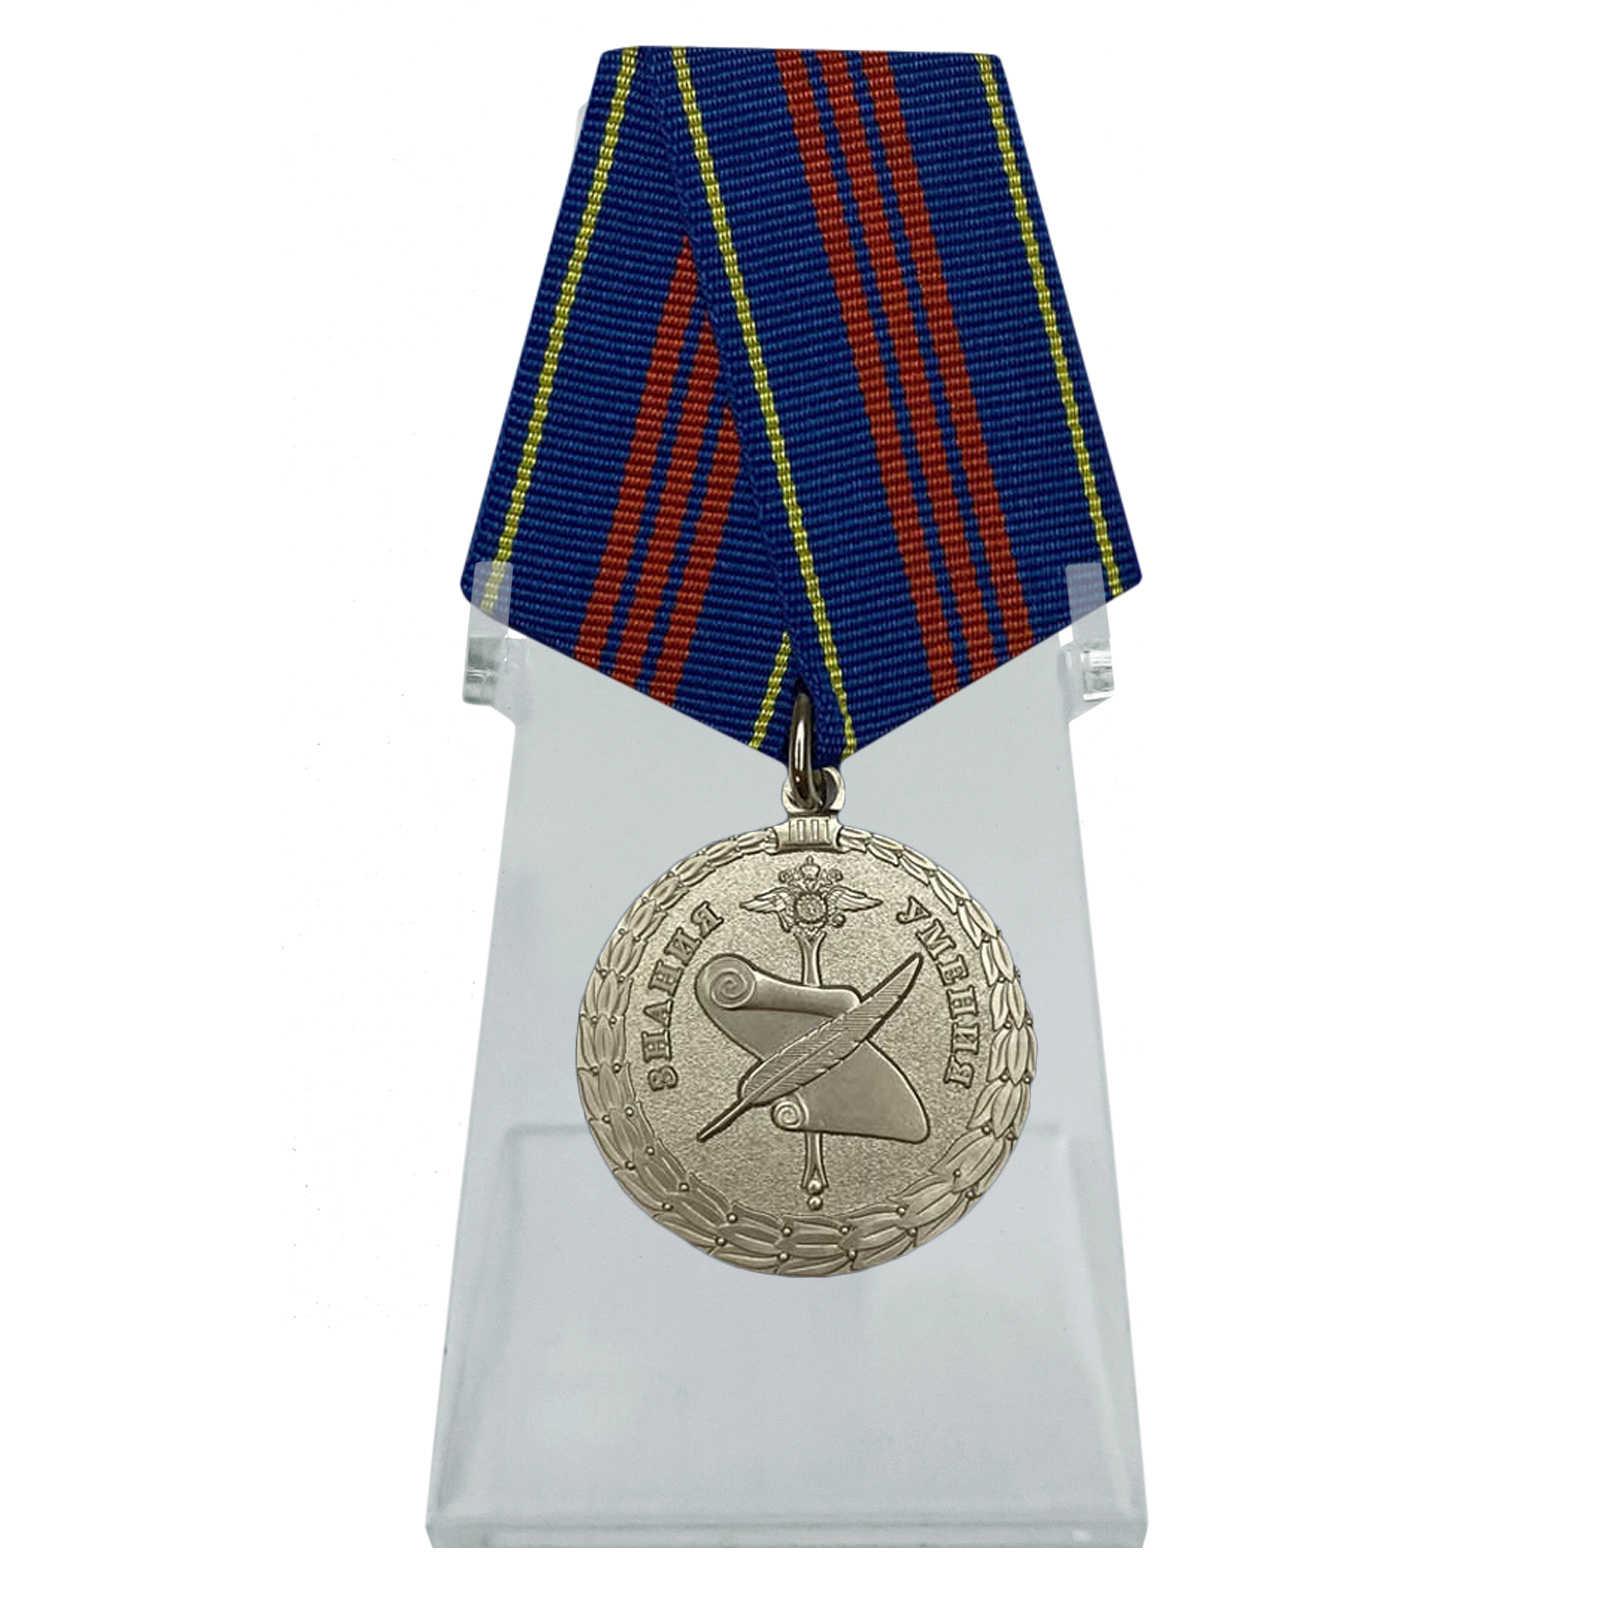 Купить медаль Управленческая деятельность 3 степени МВД на подставке в подарок